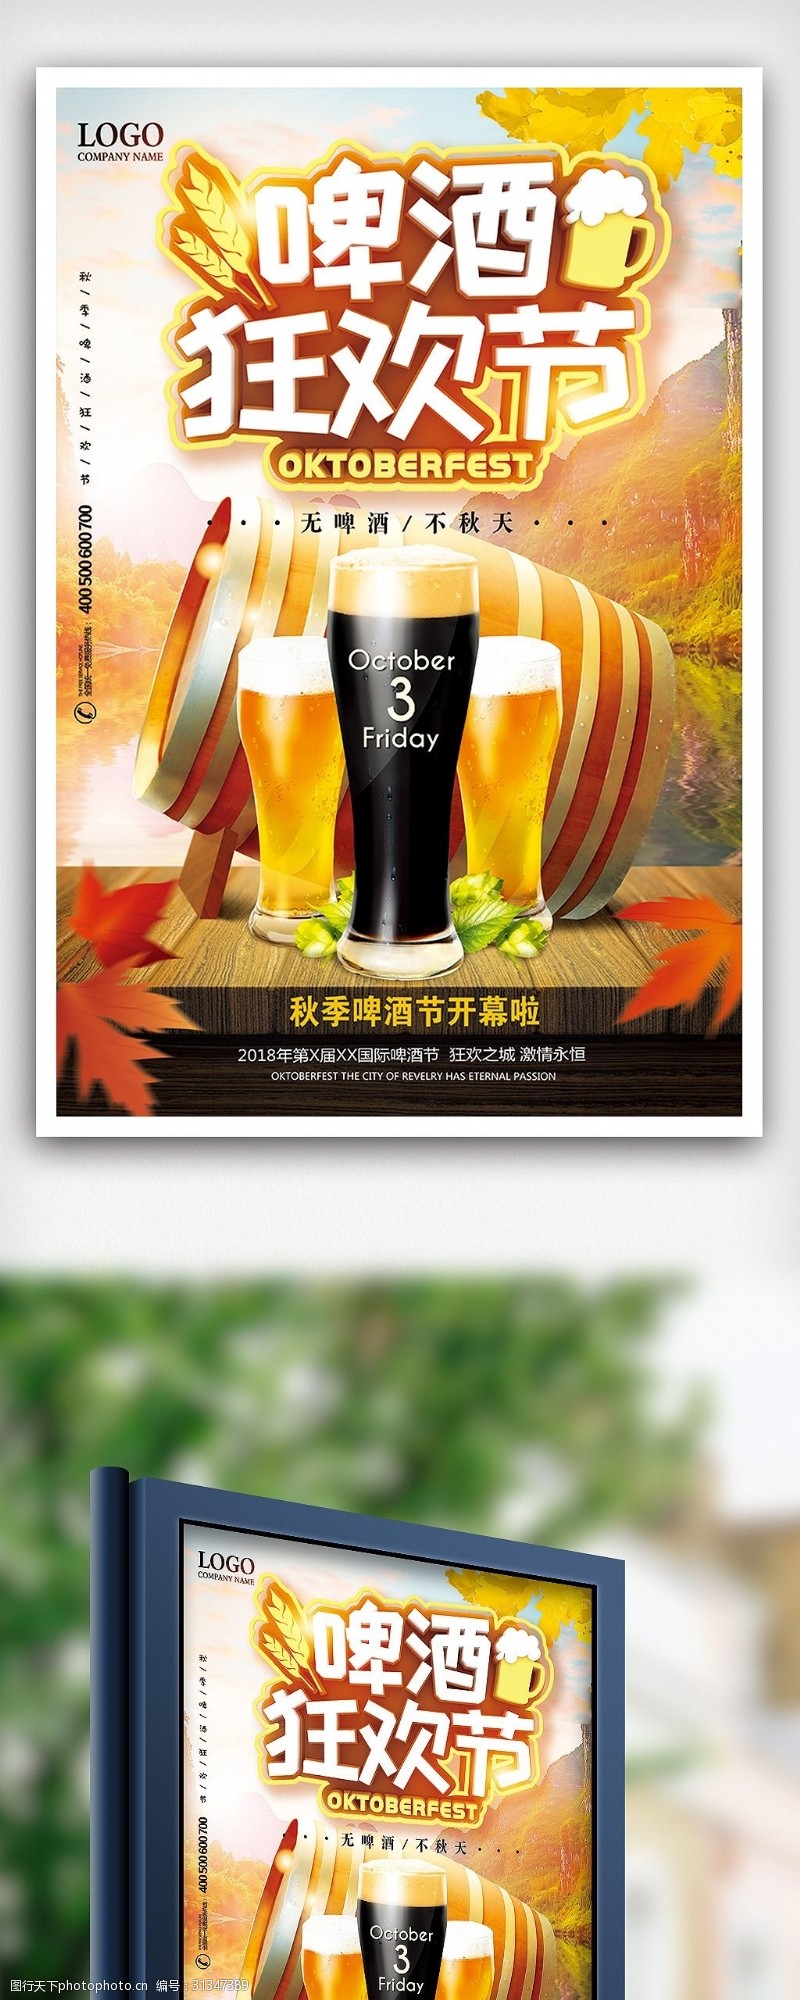 啤酒免费下载秋季啤酒狂欢节秋天喝啤酒海报